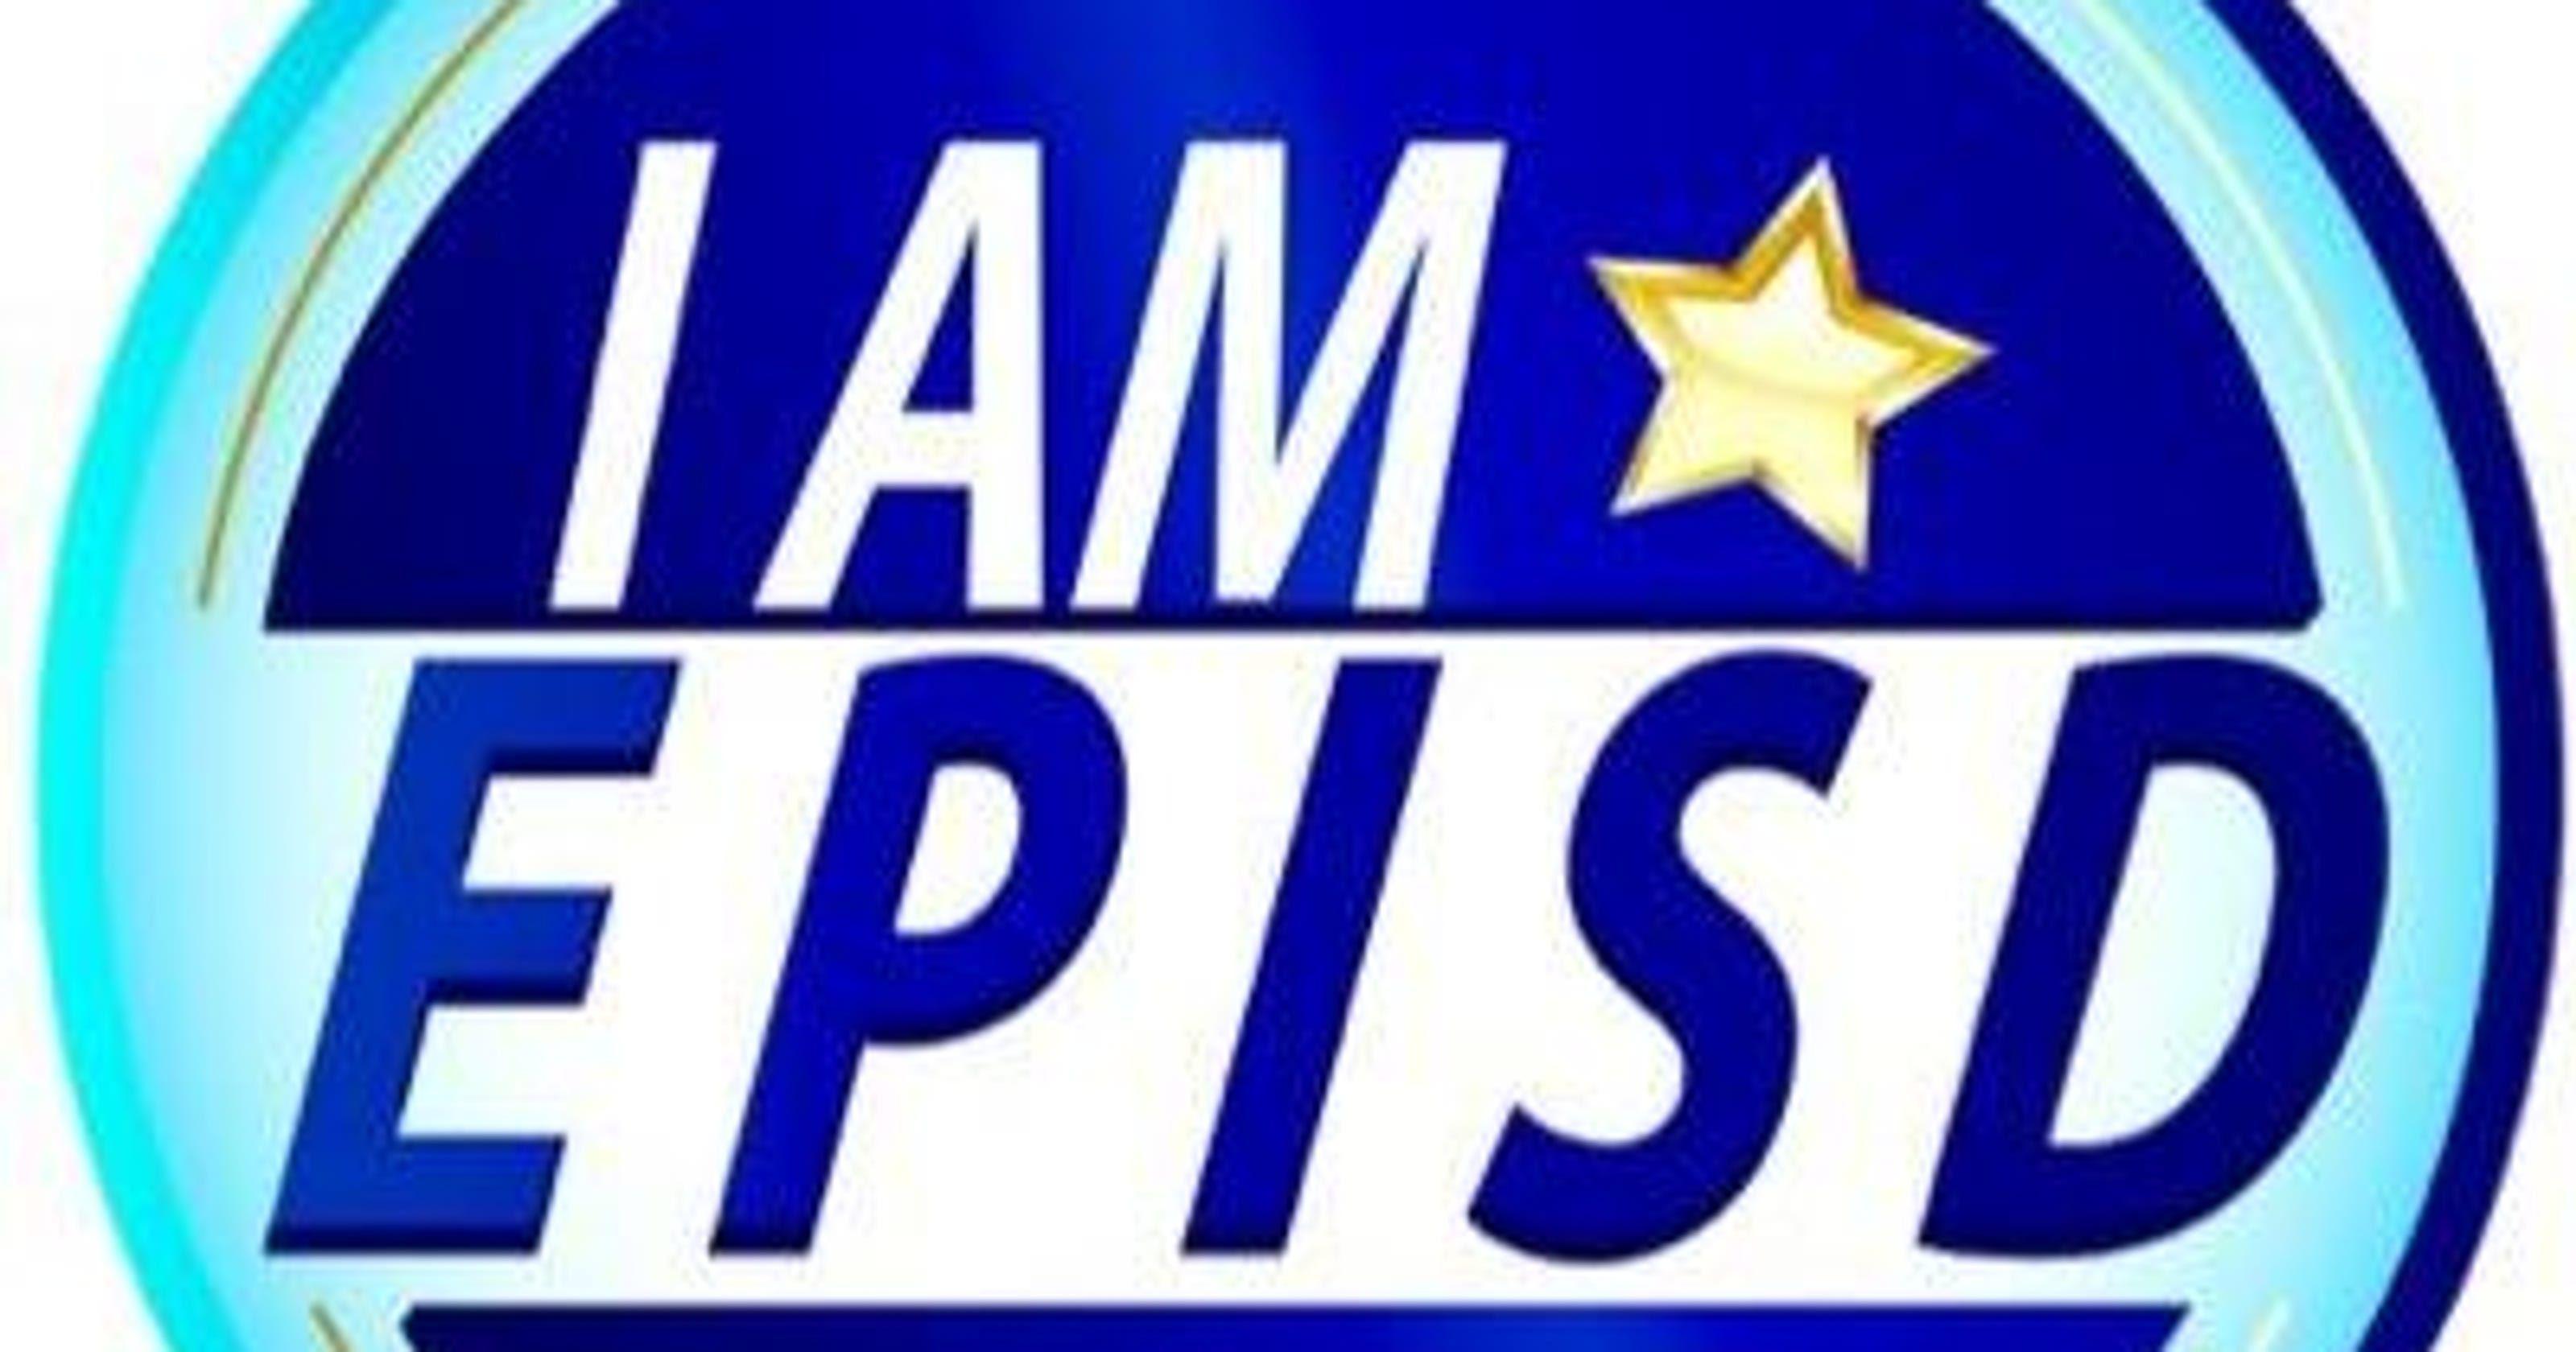 EPISD Logo - EPISD trustees vote on $669 million bond Tuesday